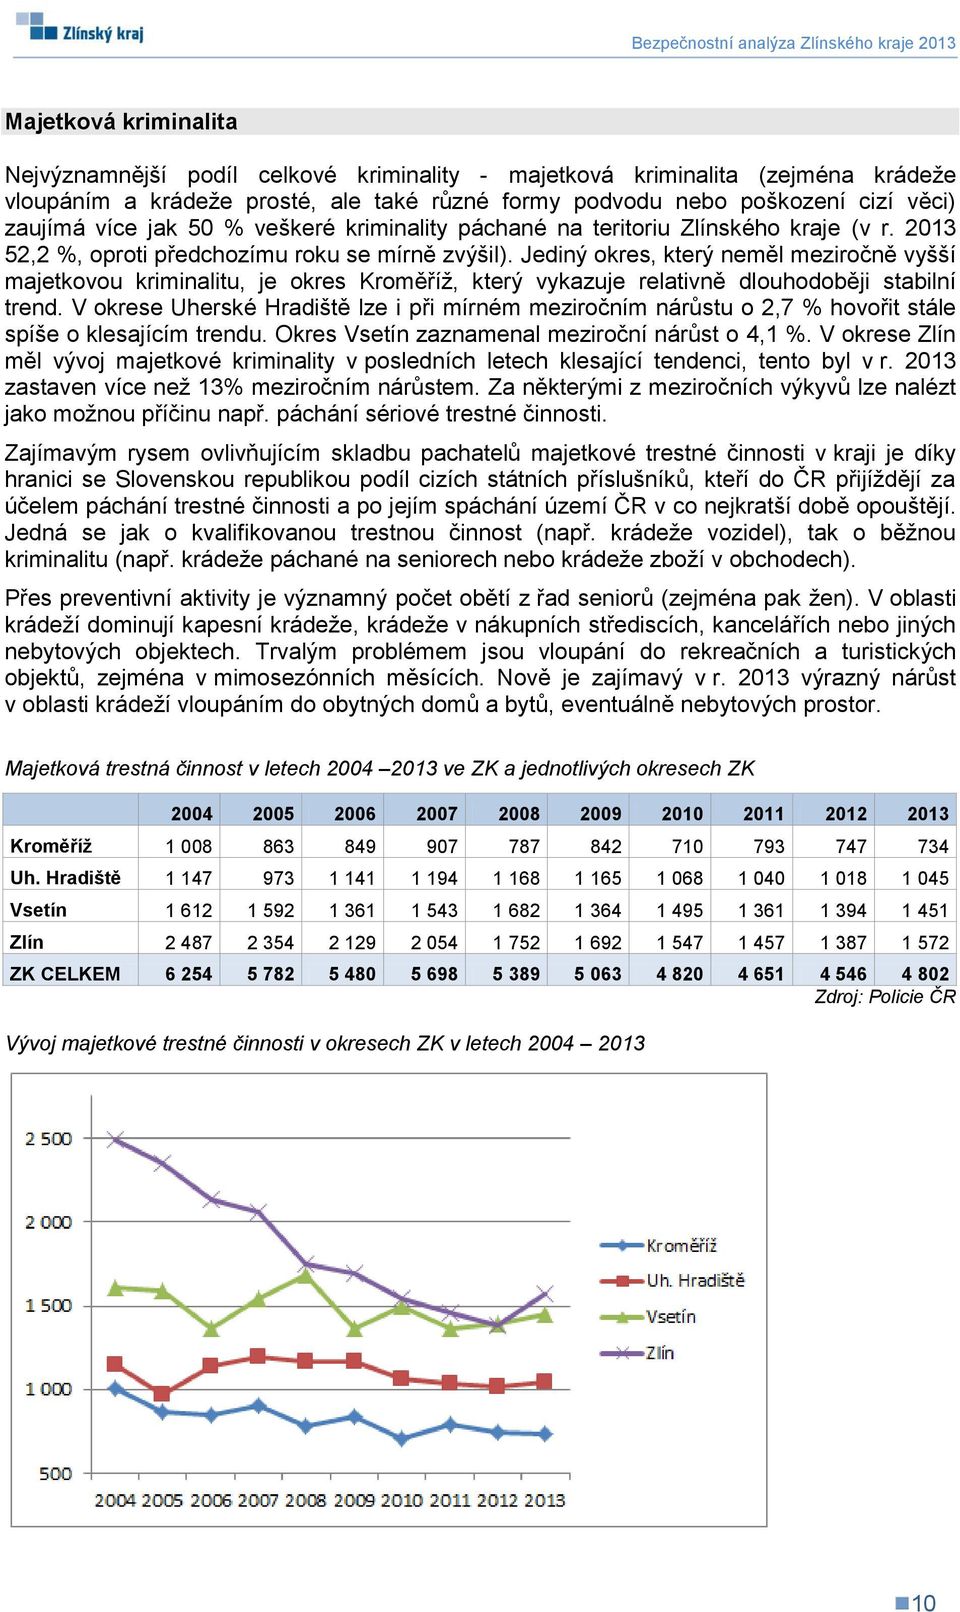 Jediný okres, který neměl meziročně vyšší majetkovou kriminalitu, je okres Kroměříž, který vykazuje relativně dlouhodoběji stabilní trend.